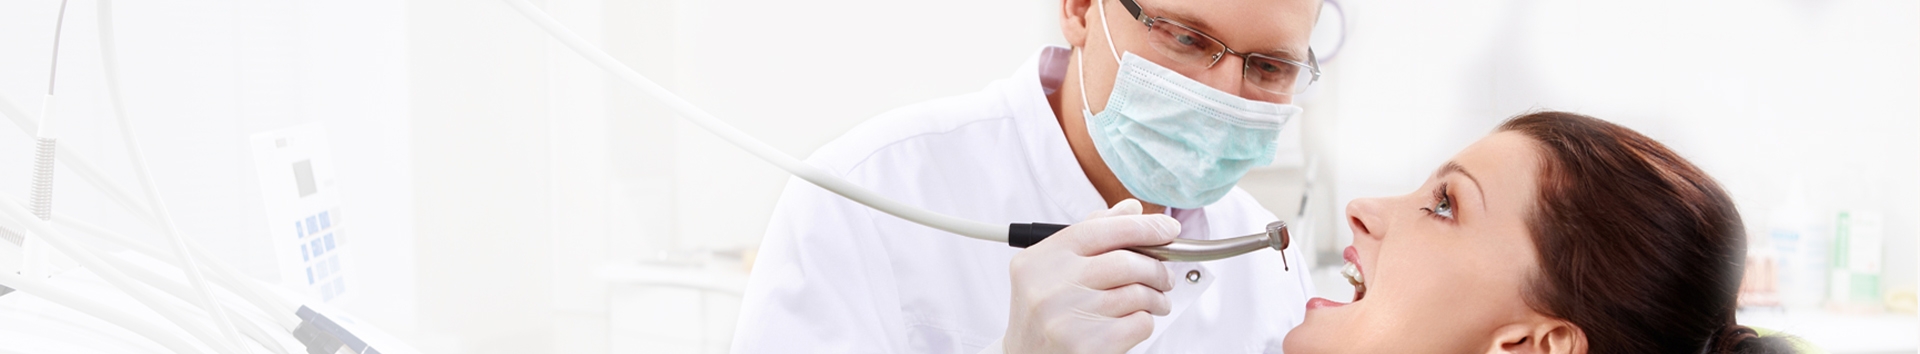 O caminho inovador do nosso Dentista para o bem-estar nas consultas